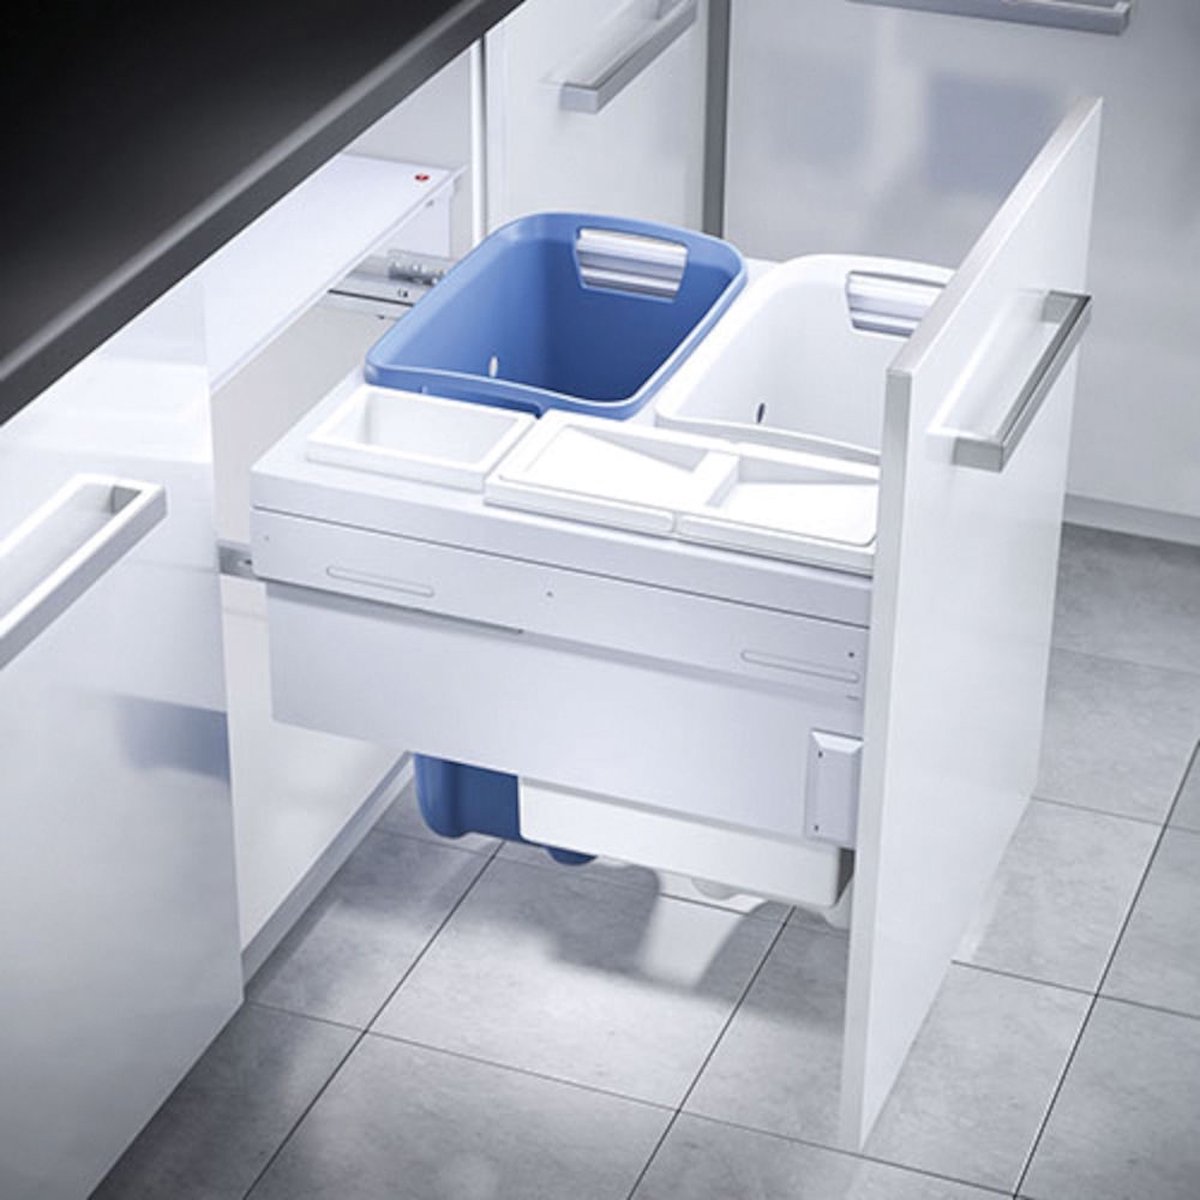 Hailo Laundry-Carrier 60cm 2x33 1x12 1x2.5 Doeco Voor kastladen